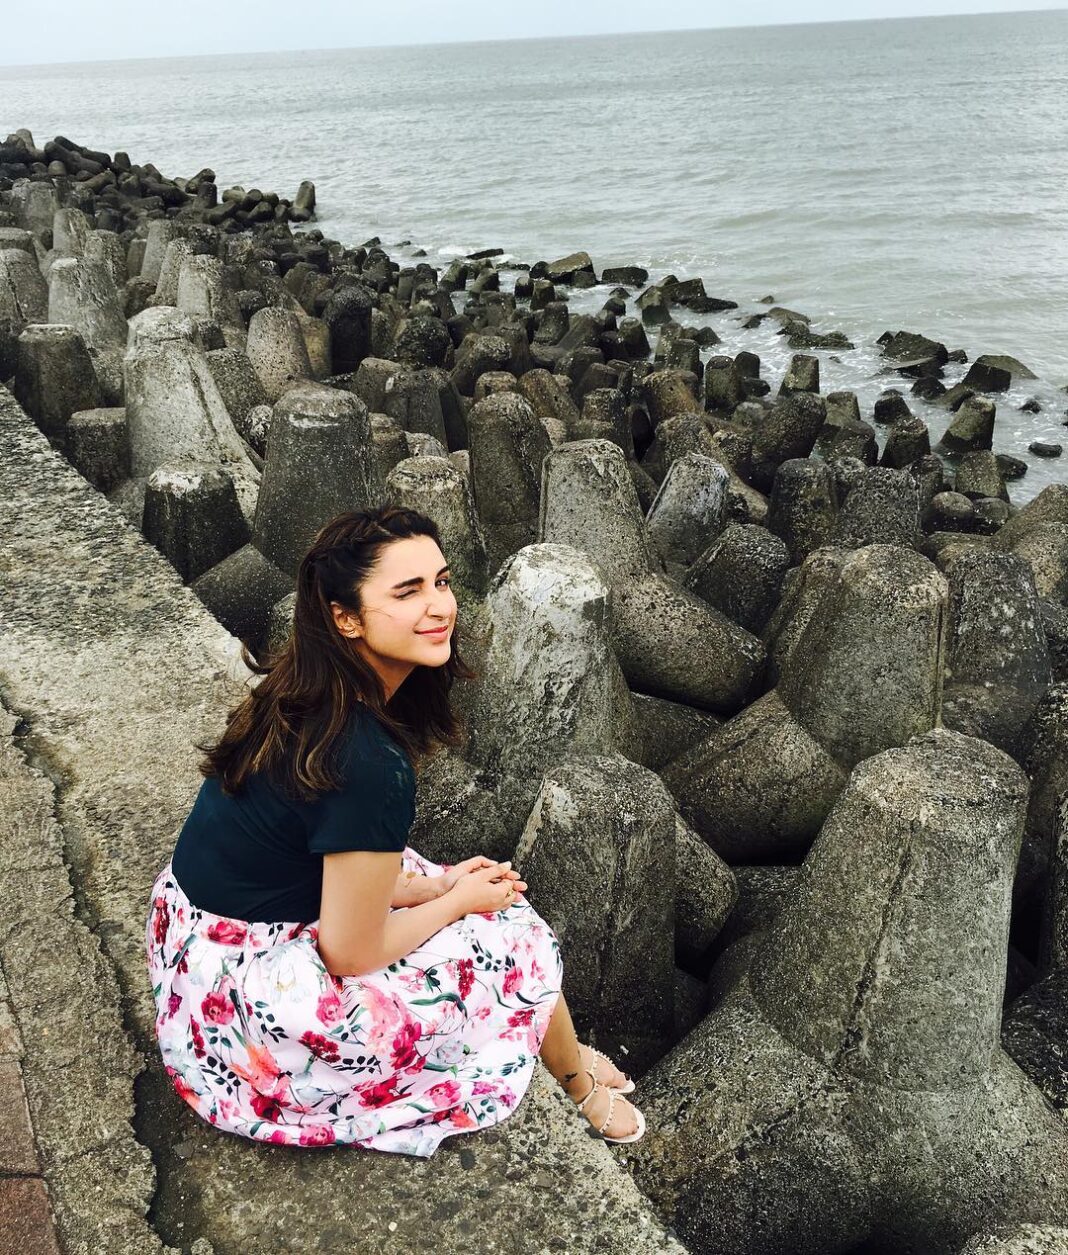 Parineeti Chopra Instagram - The ocean makes me happpppyyy! And How beautiful is our city!! #MumbaiMeriJaan #WaterBaby #MeriPyaariBindu